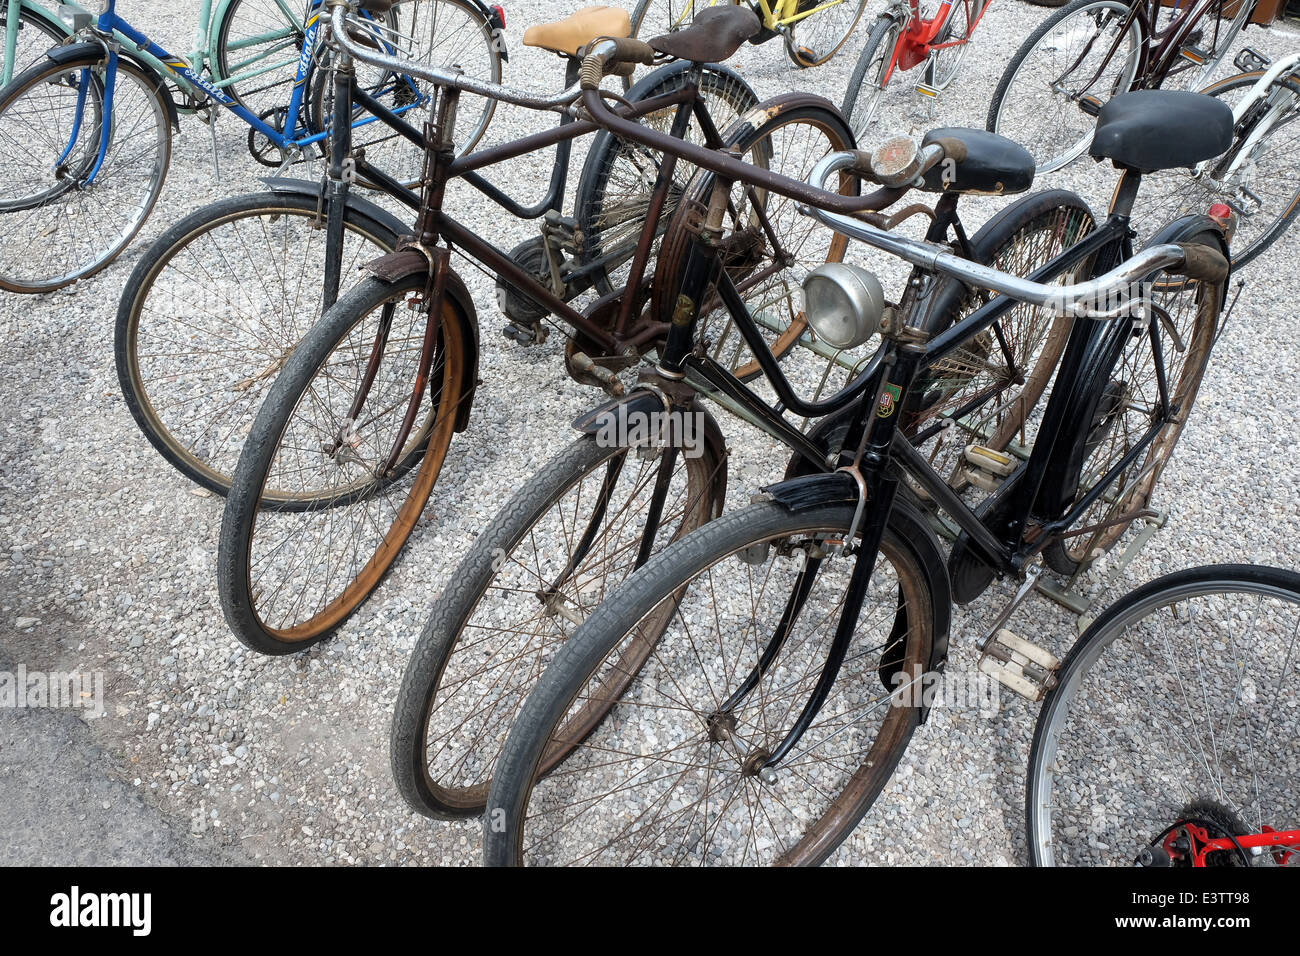 Strada del mercato di Stellata,vecchia bicicletta, Bondeno,Ferrara,Italia Foto Stock